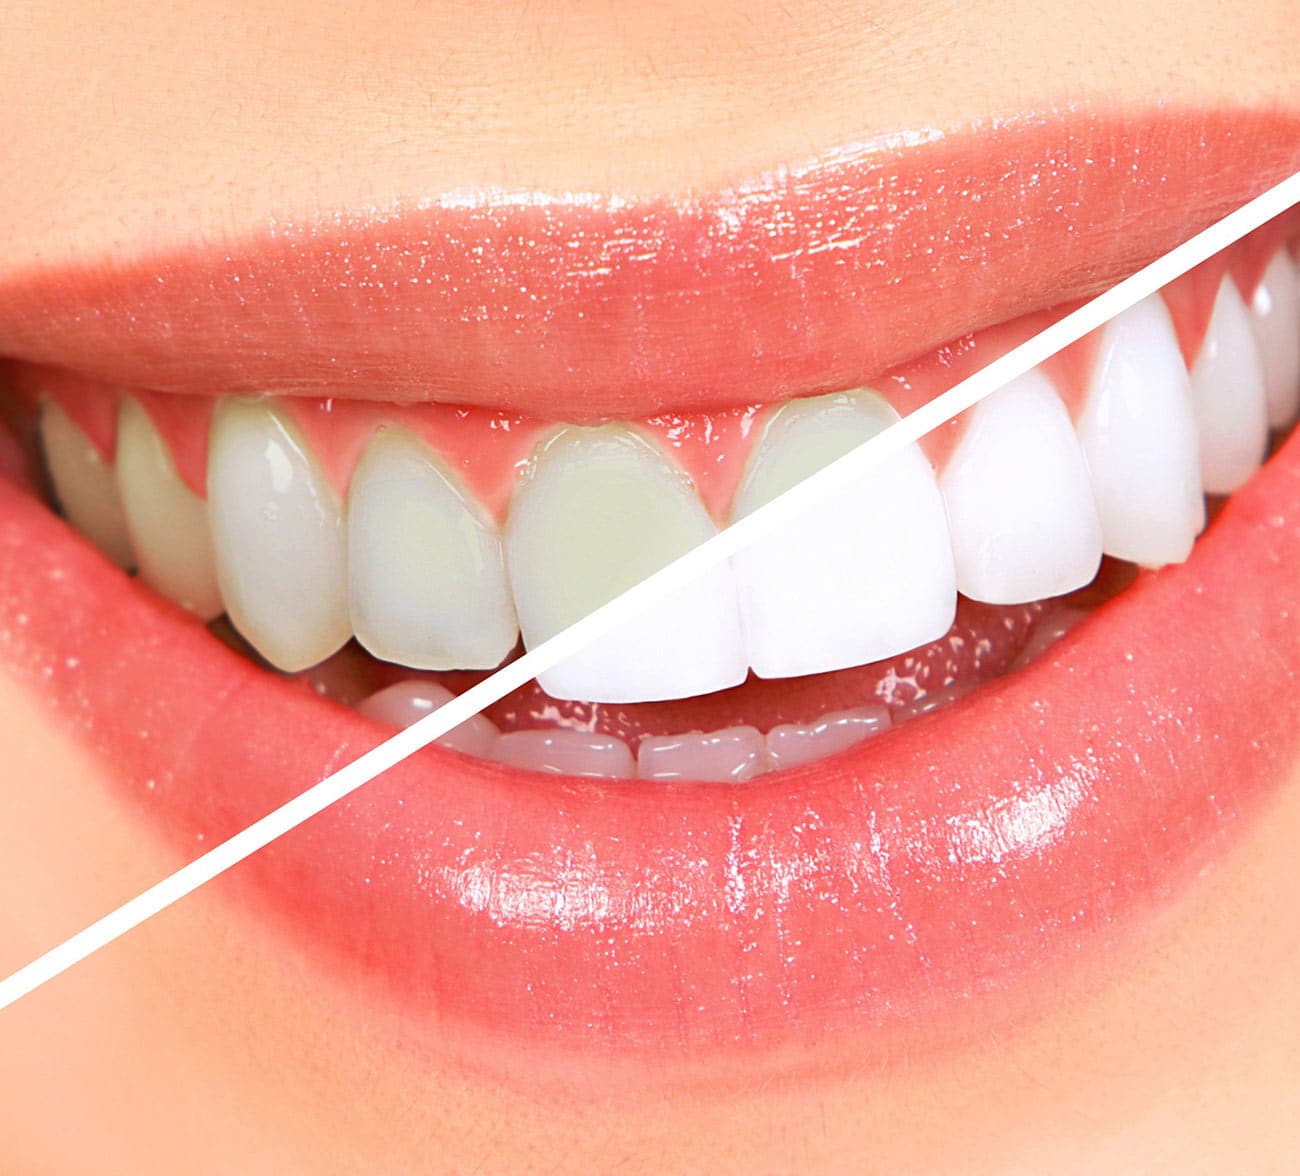 Dentus perfectus - izbjeljivanje zubi prije i poslije